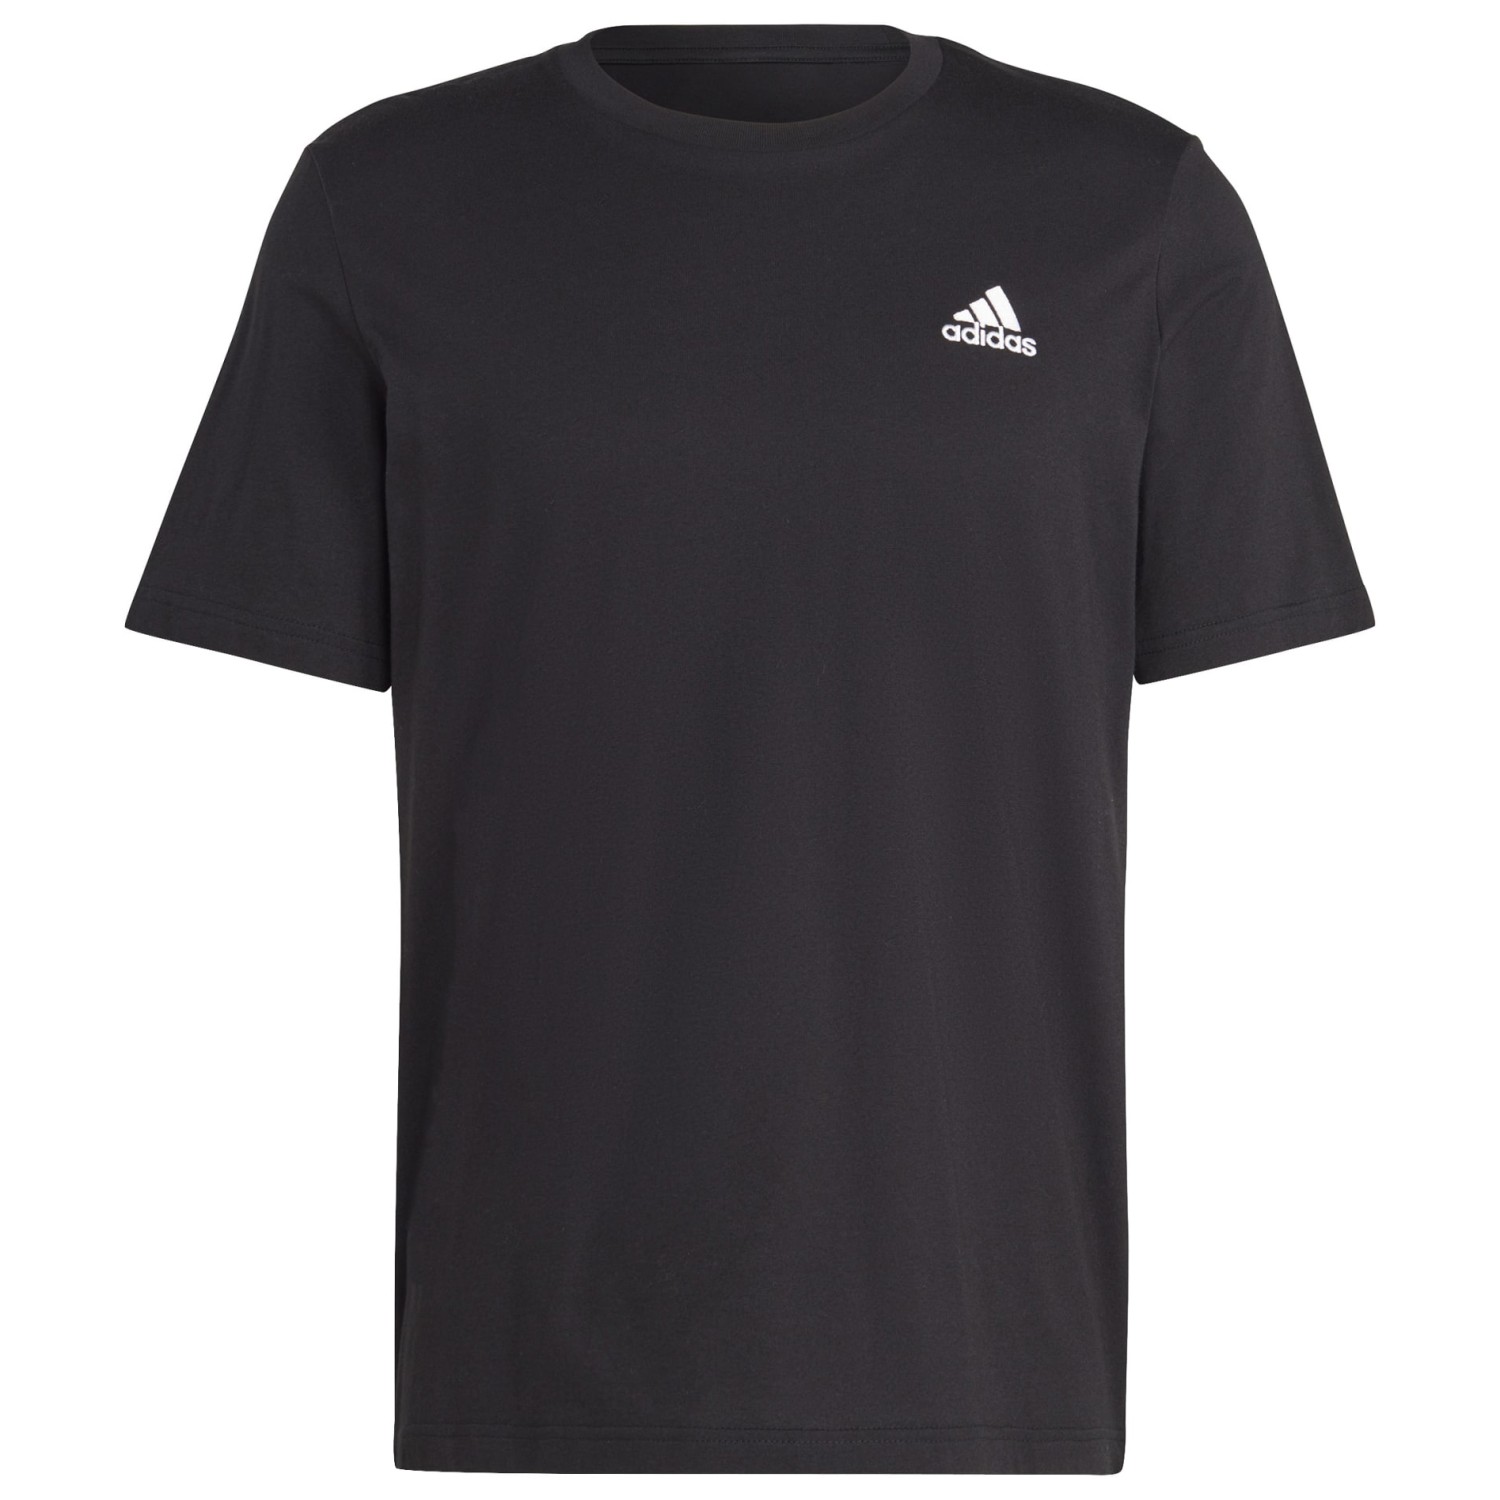 Функциональная рубашка Adidas SL SJ Tee, черный